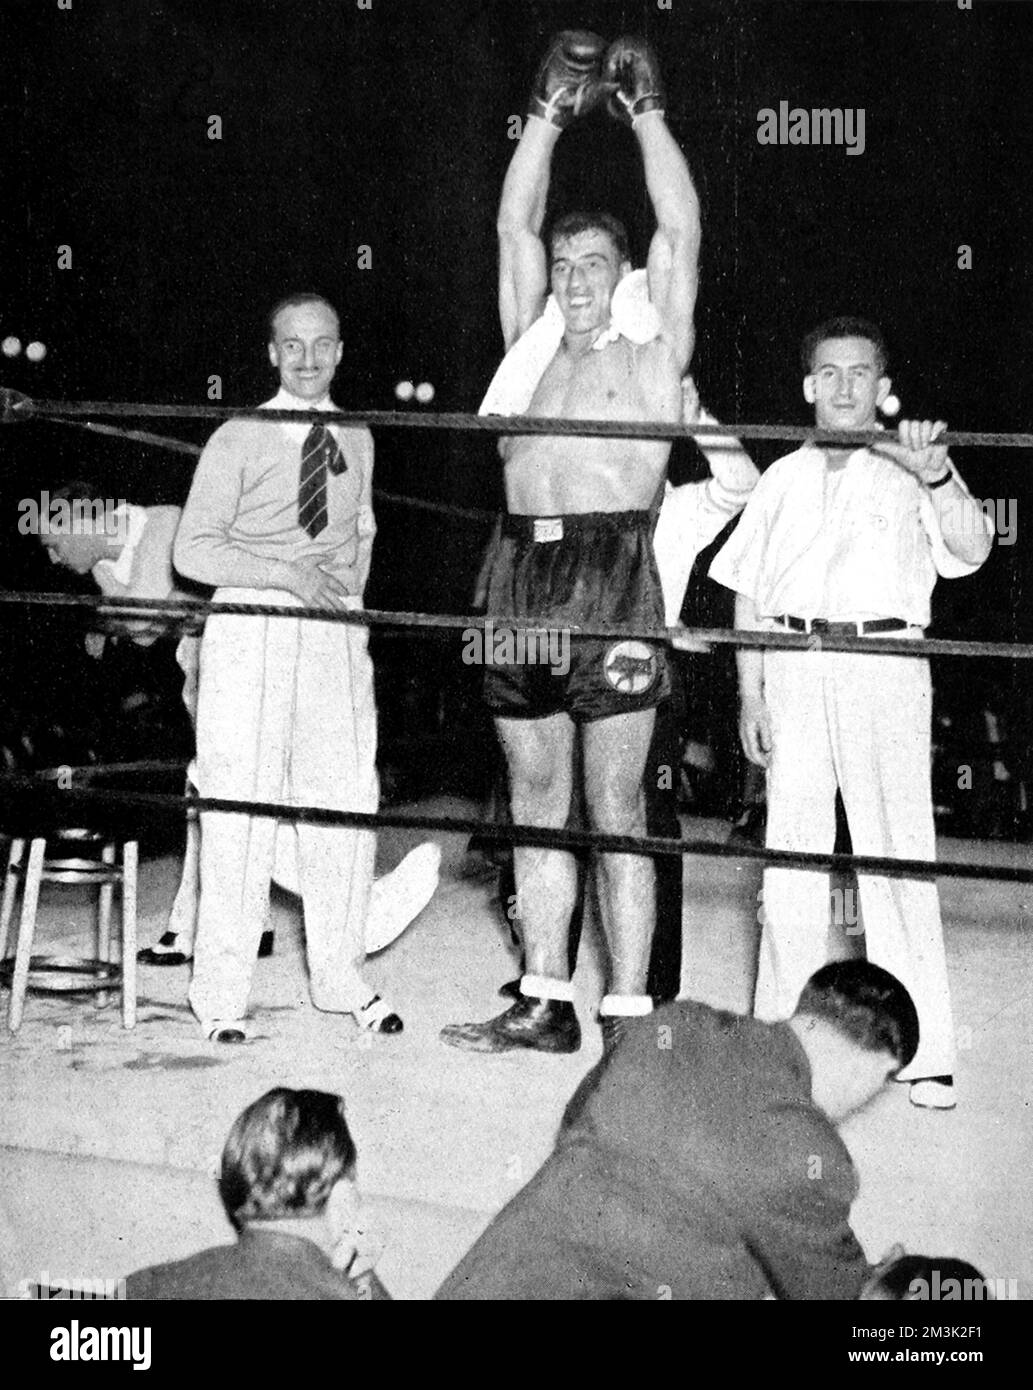 Primo Carnera (1906 - 1967), pugile italiano pesante, che aveva appena sconfitto Jack Sharkey per diventare campione del mondo al Madison Square Garden 'Bowl', New York, 1933. Foto Stock